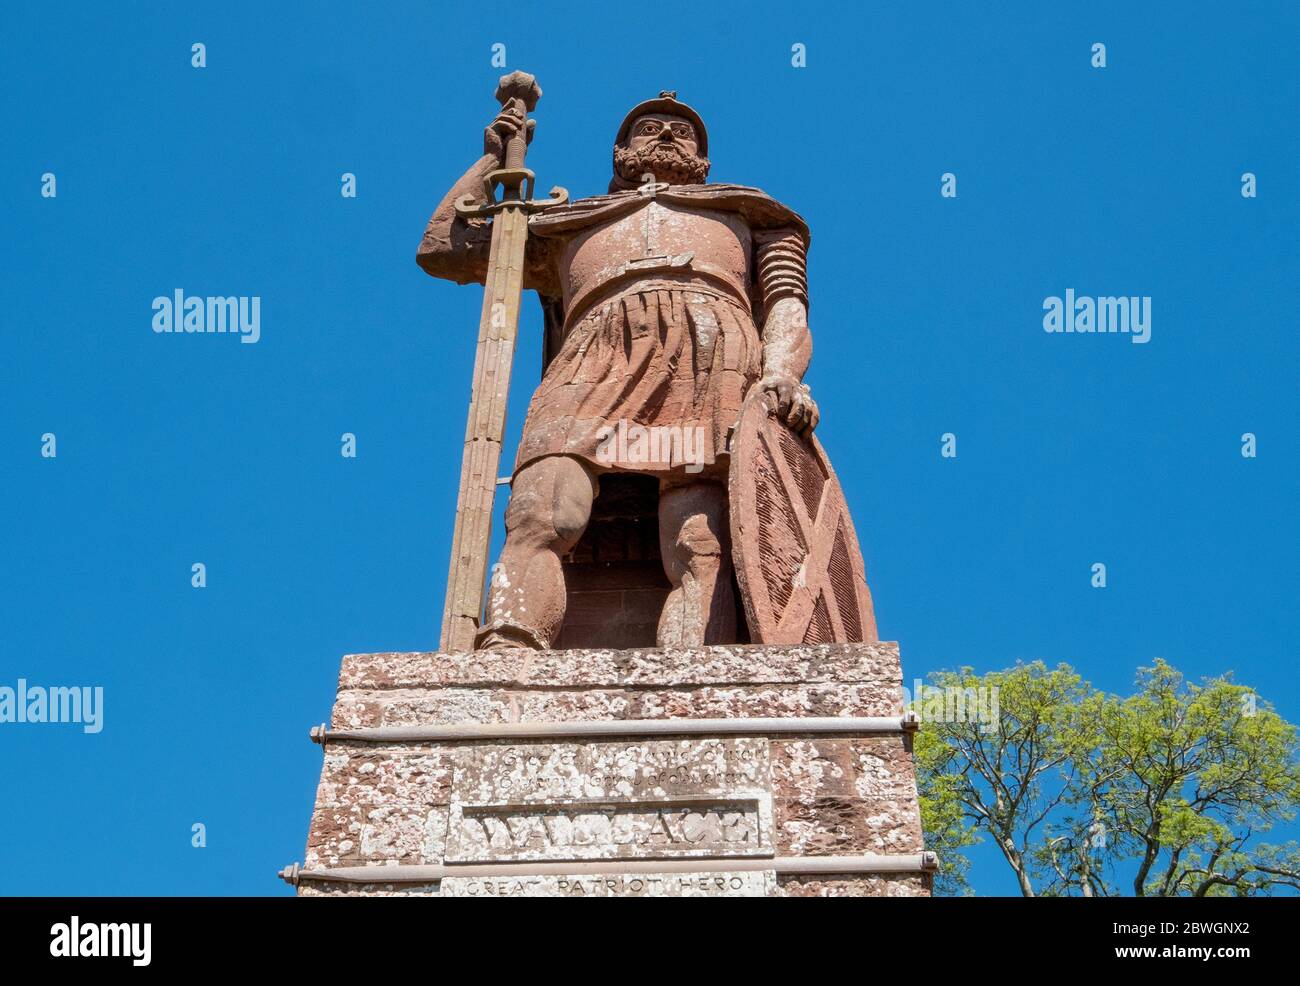 La statue de William Wallace située dans le domaine de Bemersyde, près de Melrose aux frontières écossaises, est une statue commémorant William Wallace. Banque D'Images